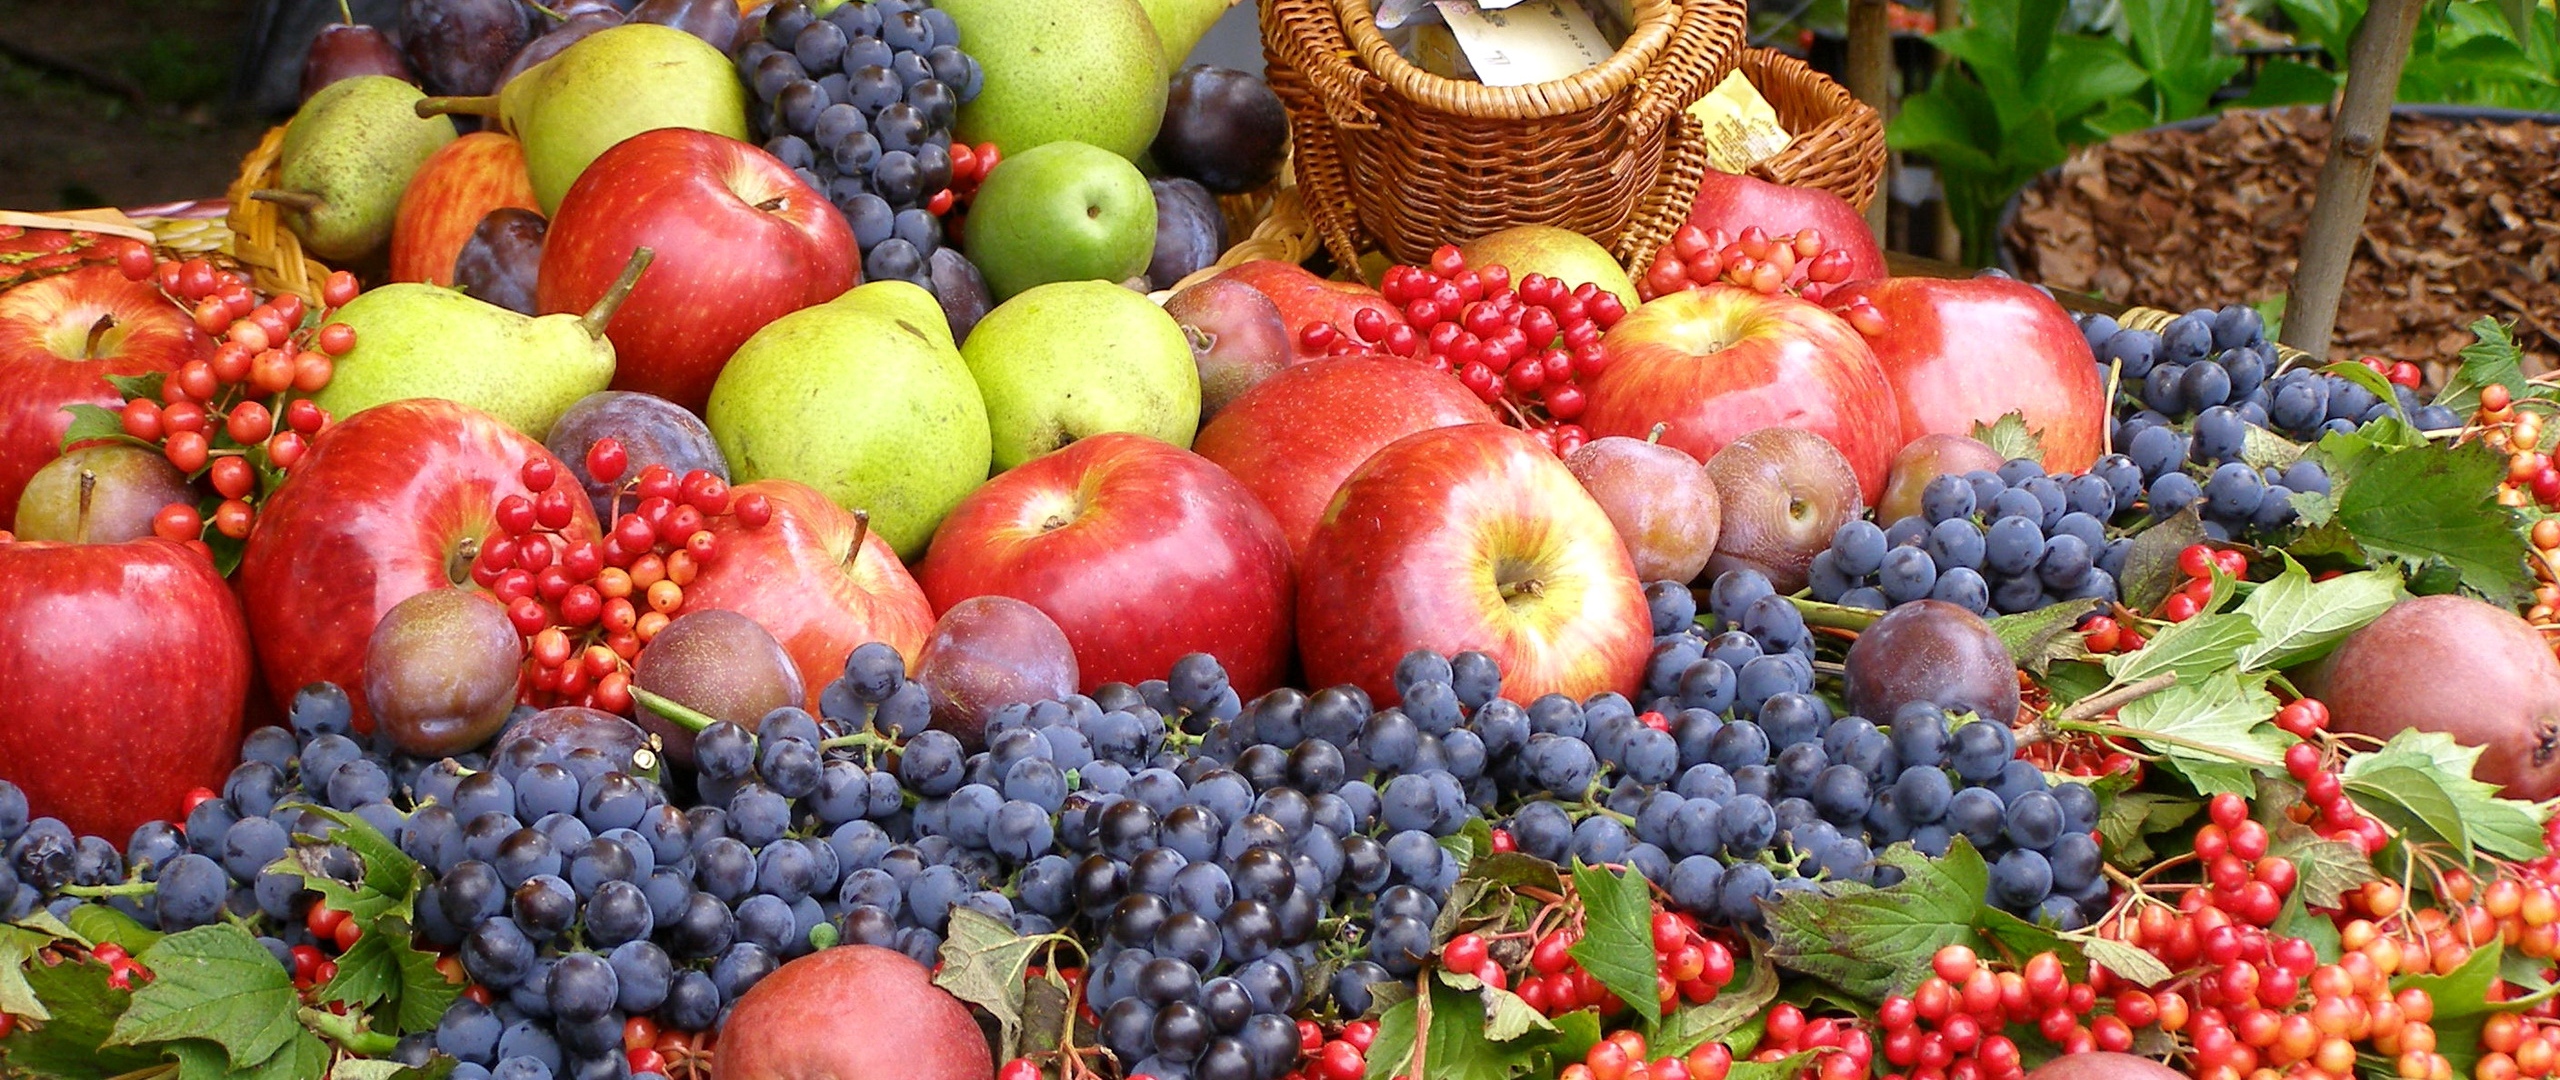 Wallpaper Grapes, Apples, Much, Fruits - Fruit Wallpaper Wide - HD Wallpaper 